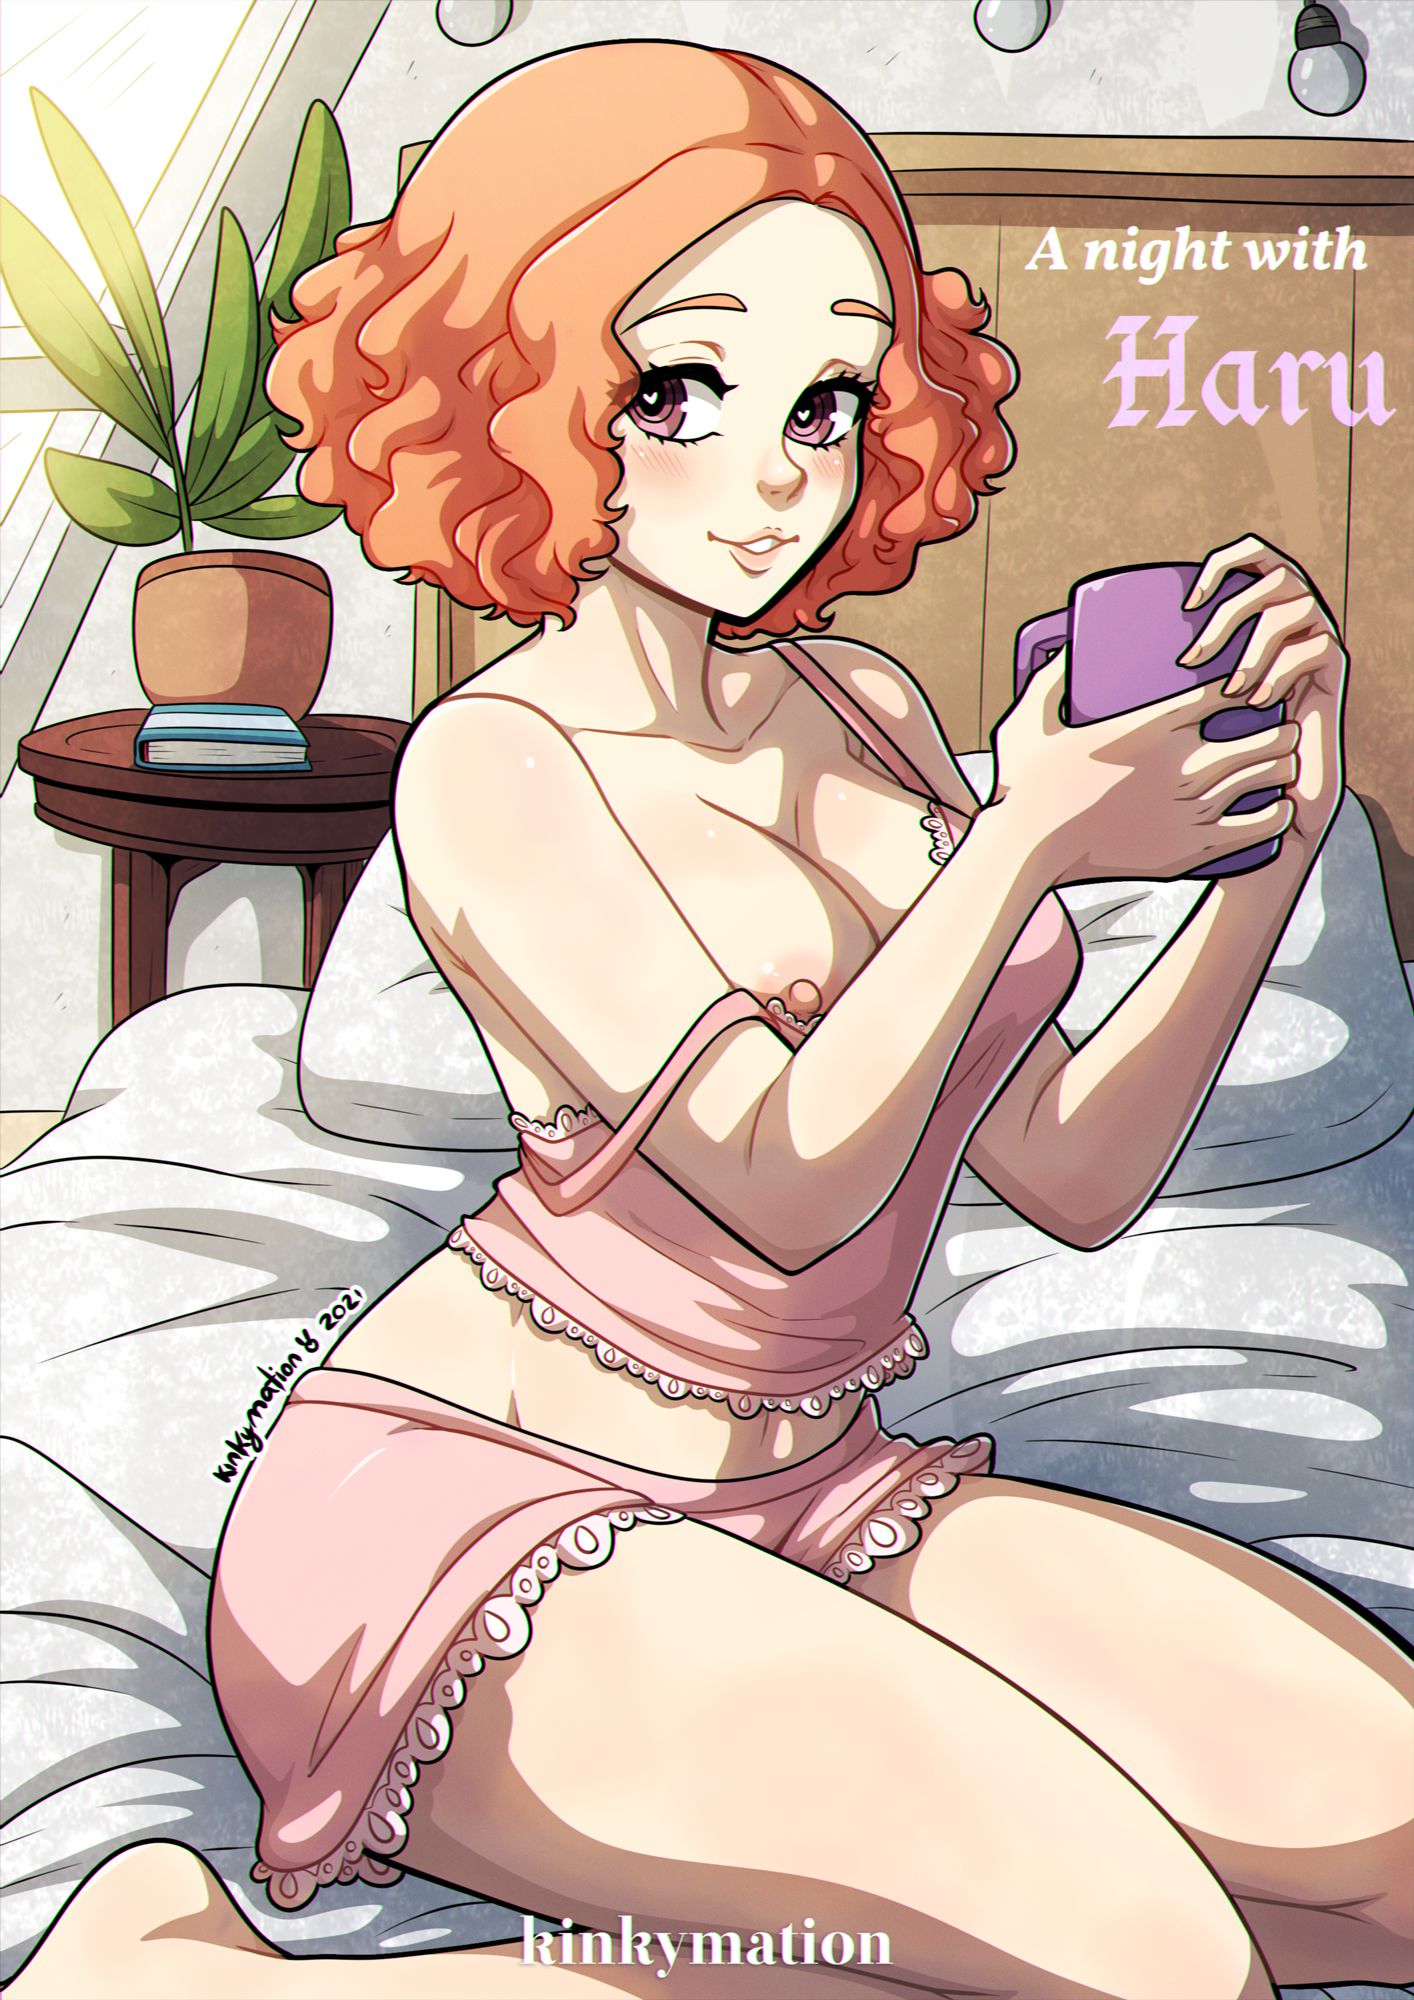 Persona 5 Porn - A Night With Haru (Persona 5) [Kinkymation] - 1 . A Night With Haru -  Chapter 1 (Persona 5) [Kinkymation] - AllPornComic